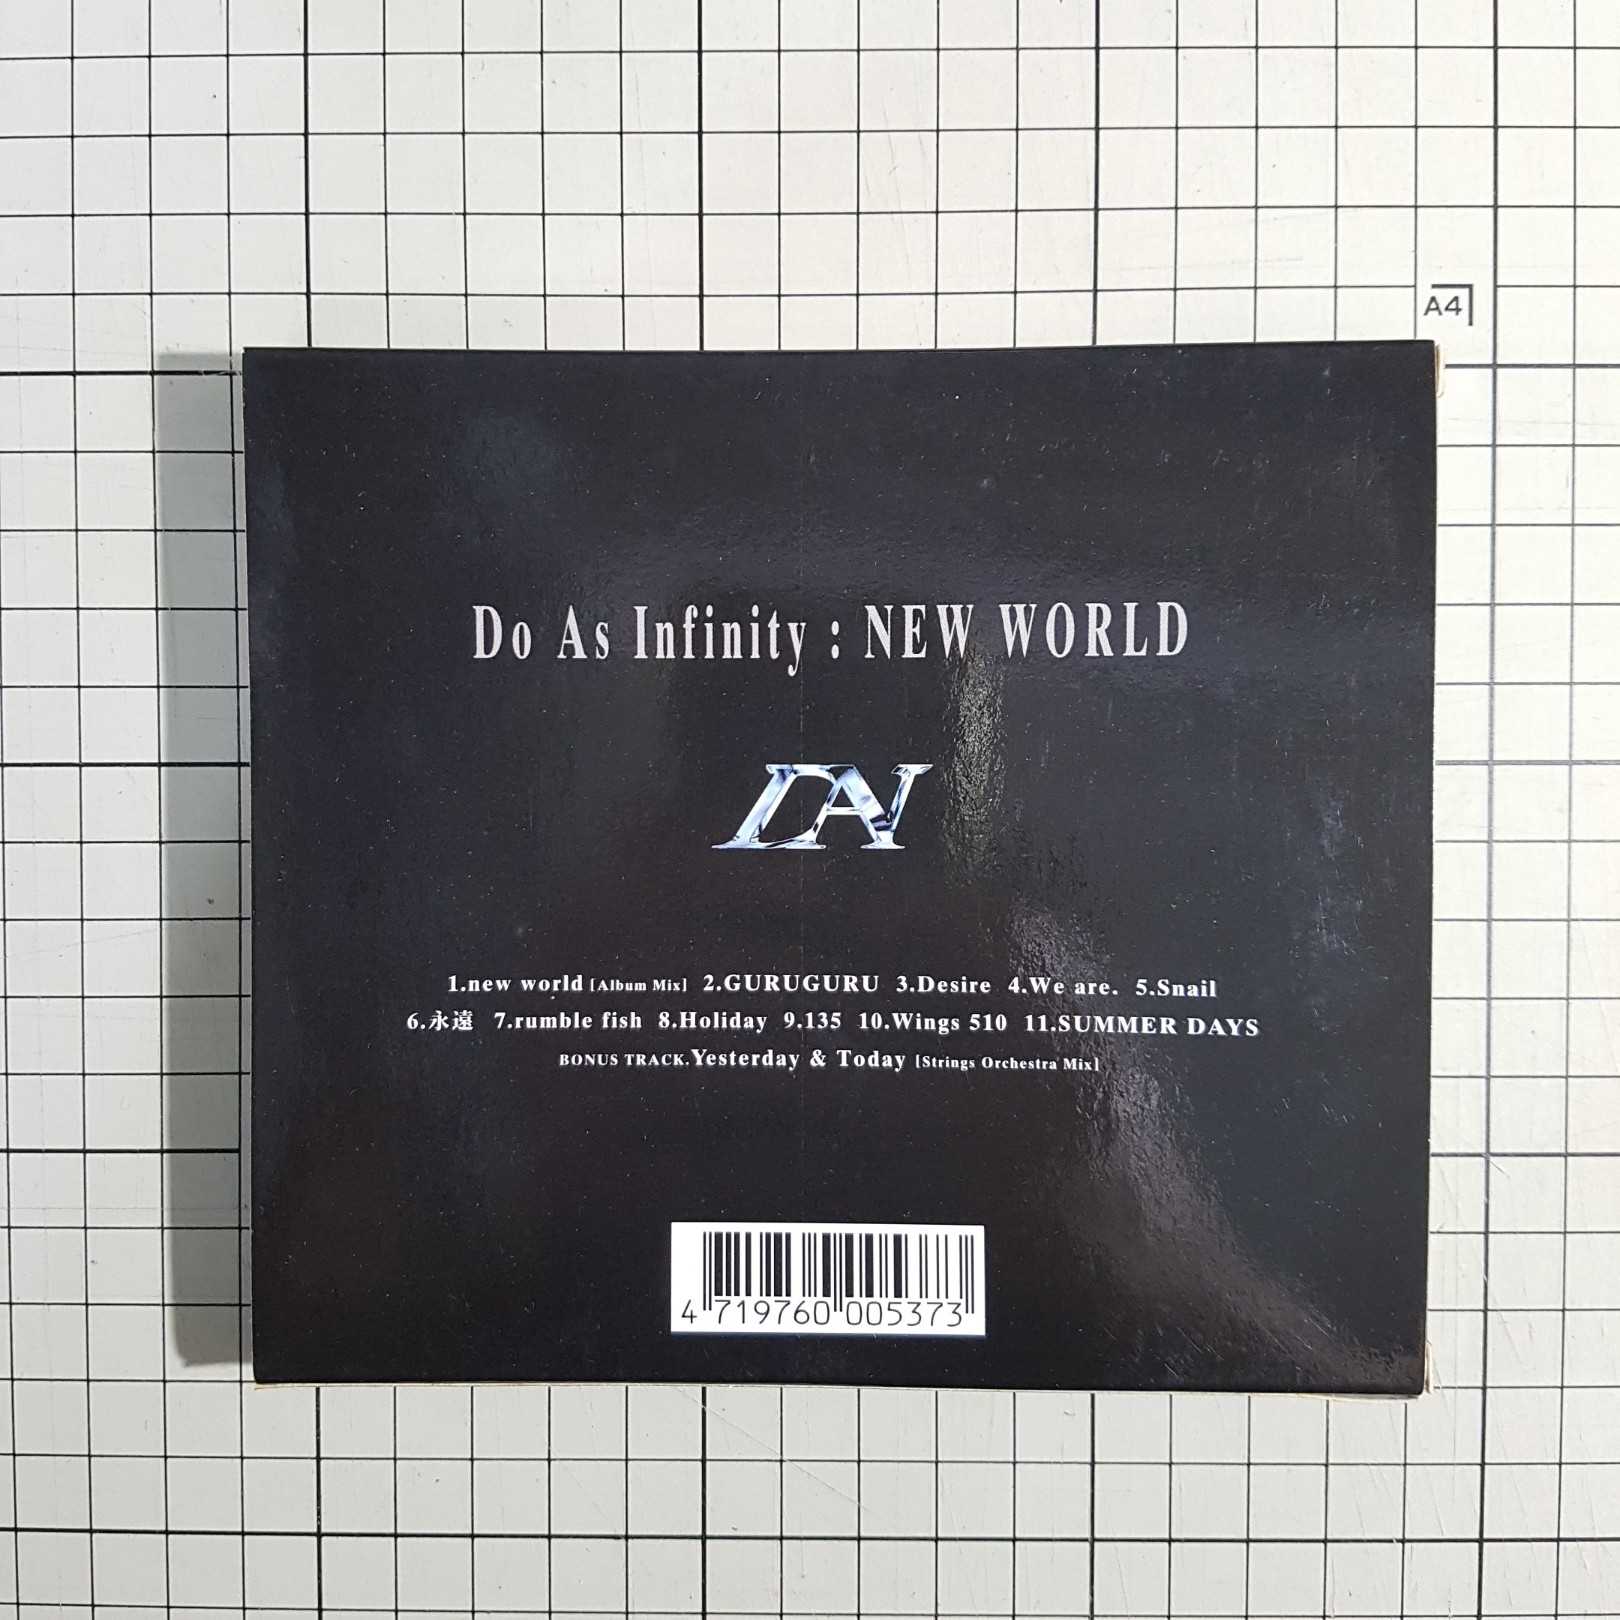 [長夜餘火]現貨24小時出 自藏狀況好 Do As Infinity 大無限樂團 D.A.I NEW WORLD 新世界